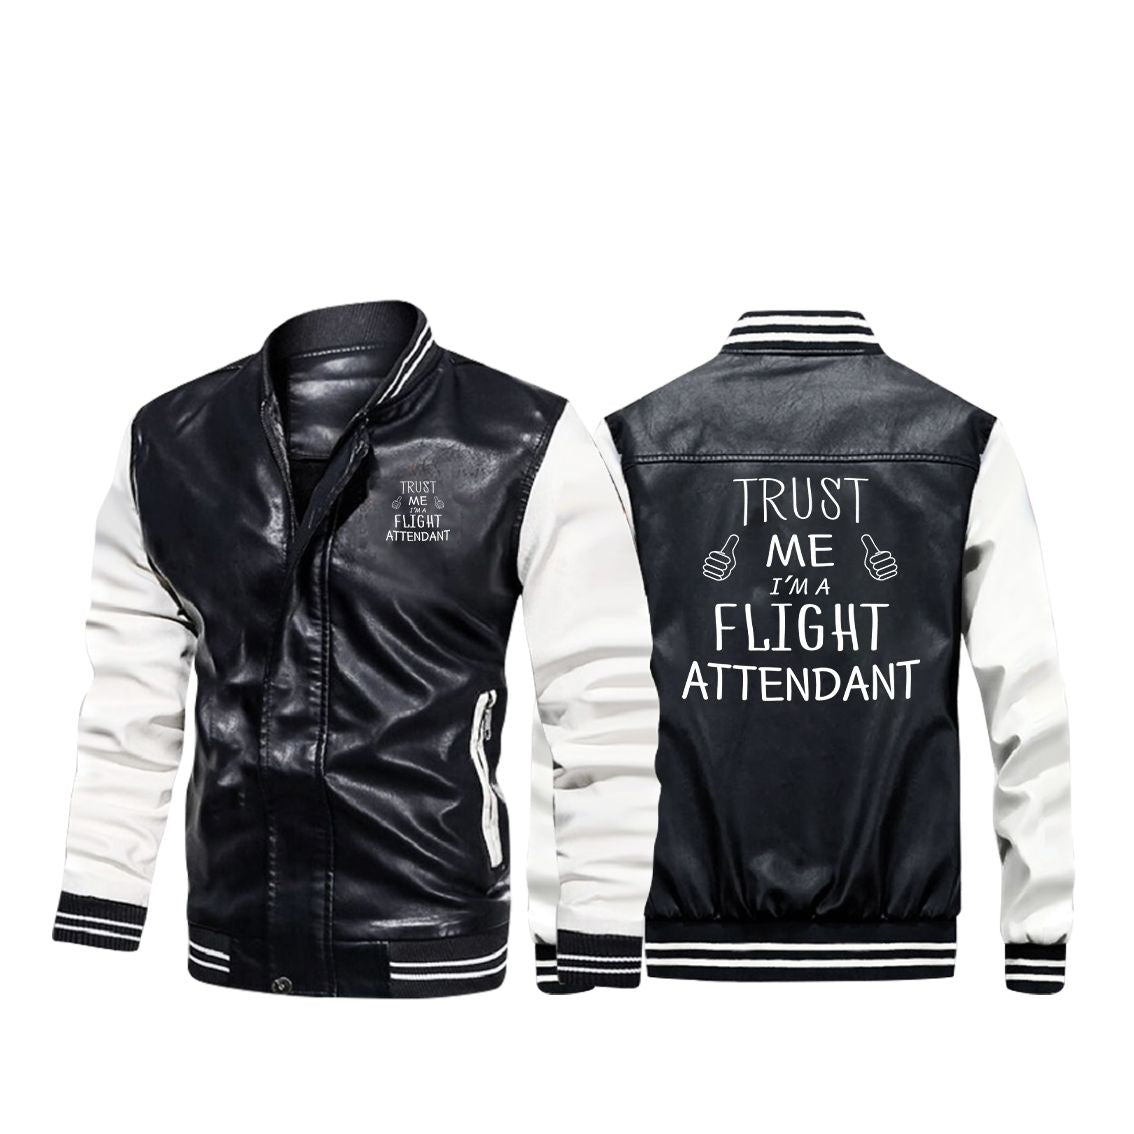 Jacket Sports Oversized Bomber Jacket Streetwear Street Style Cool Fashion  Stylish - Etsy